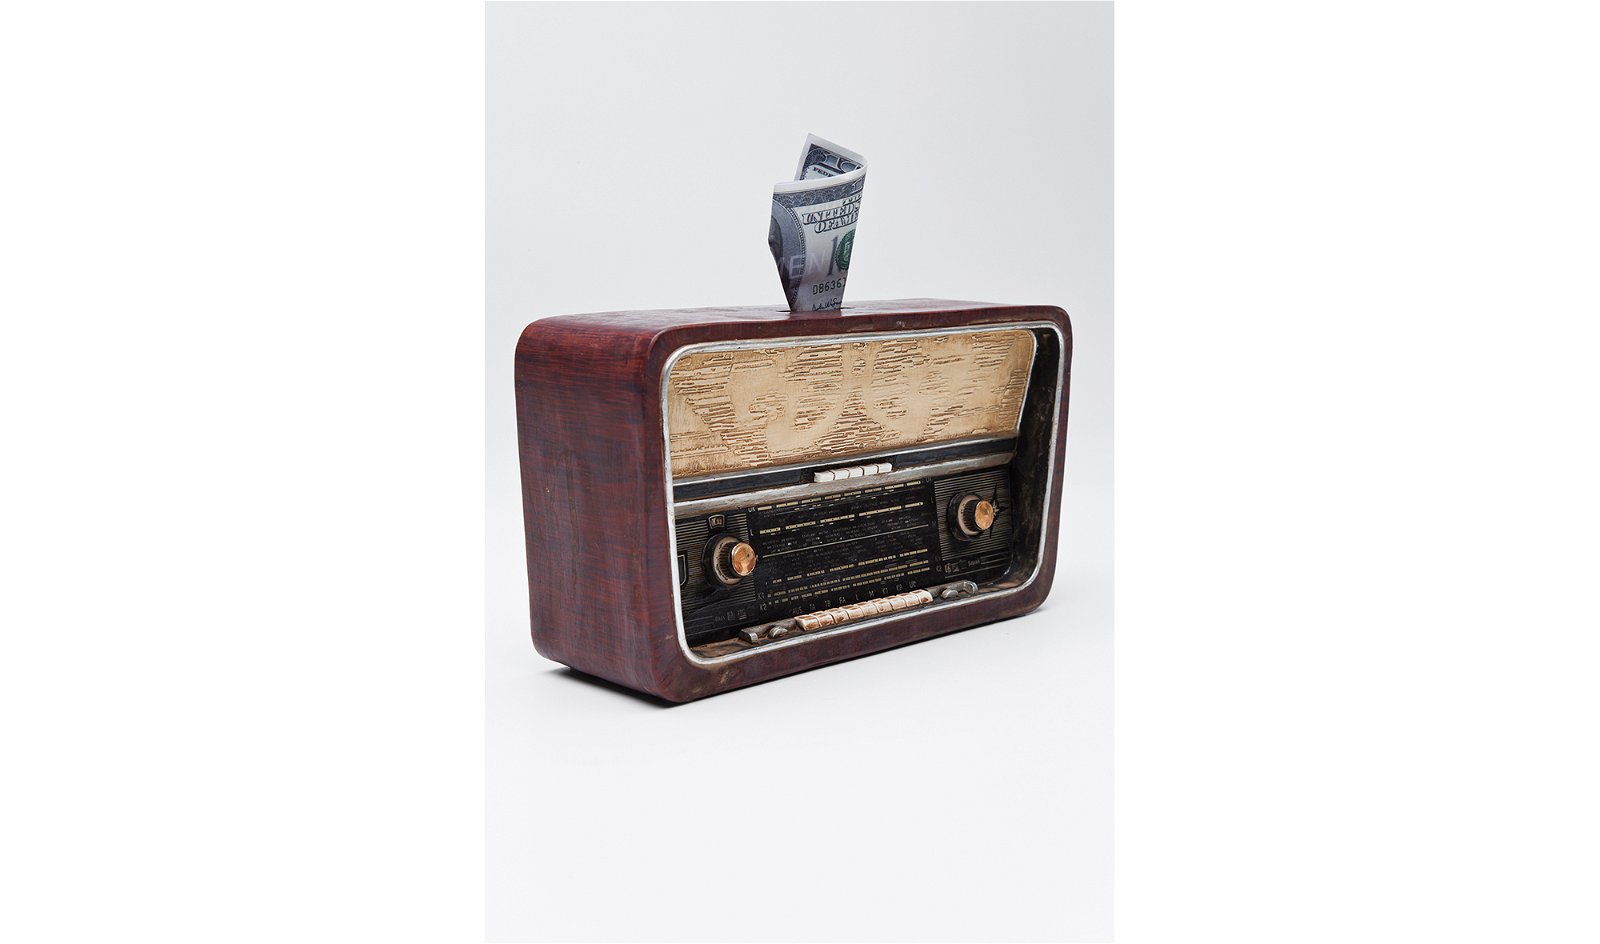 Hucha Radio Antique